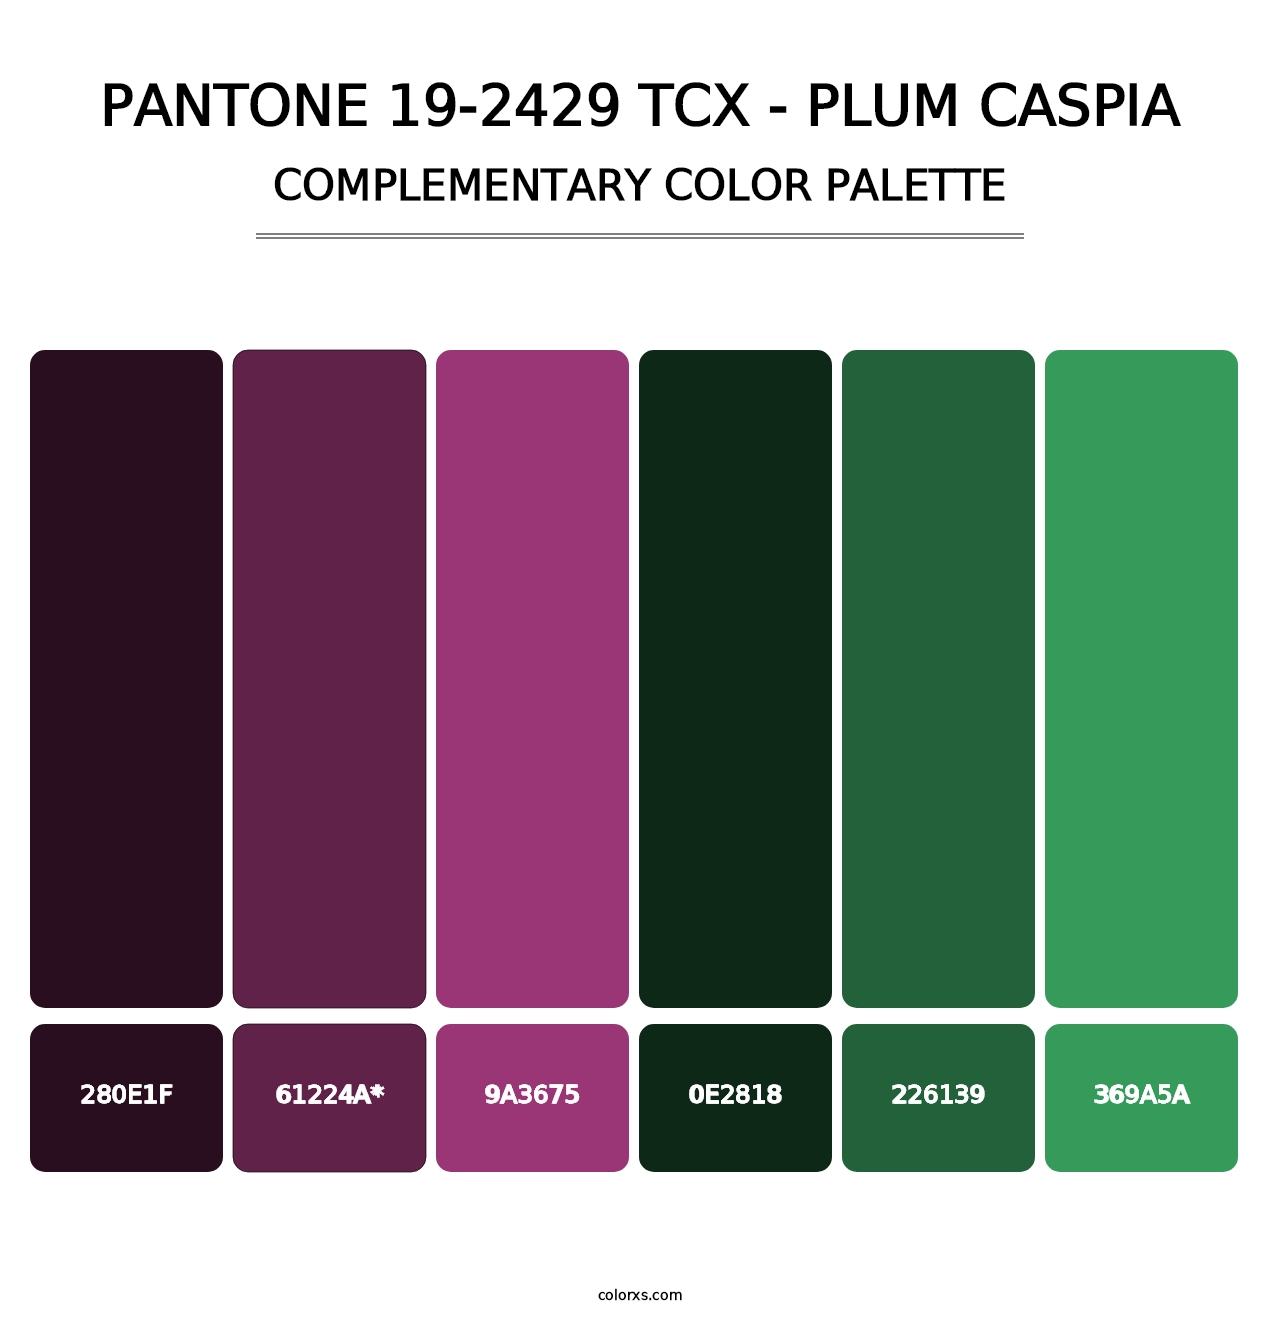 PANTONE 19-2429 TCX - Plum Caspia - Complementary Color Palette